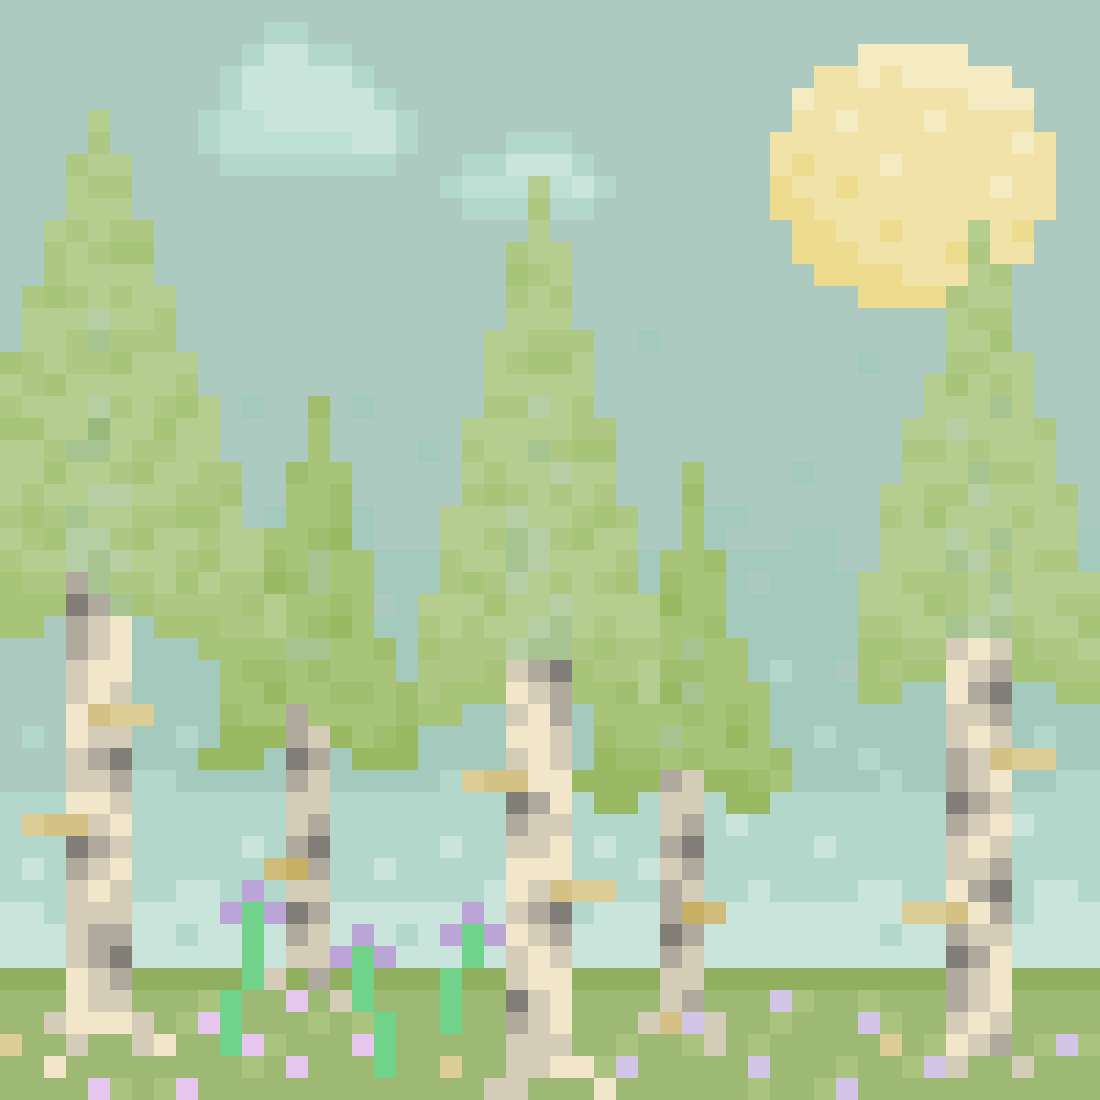 A birch forest